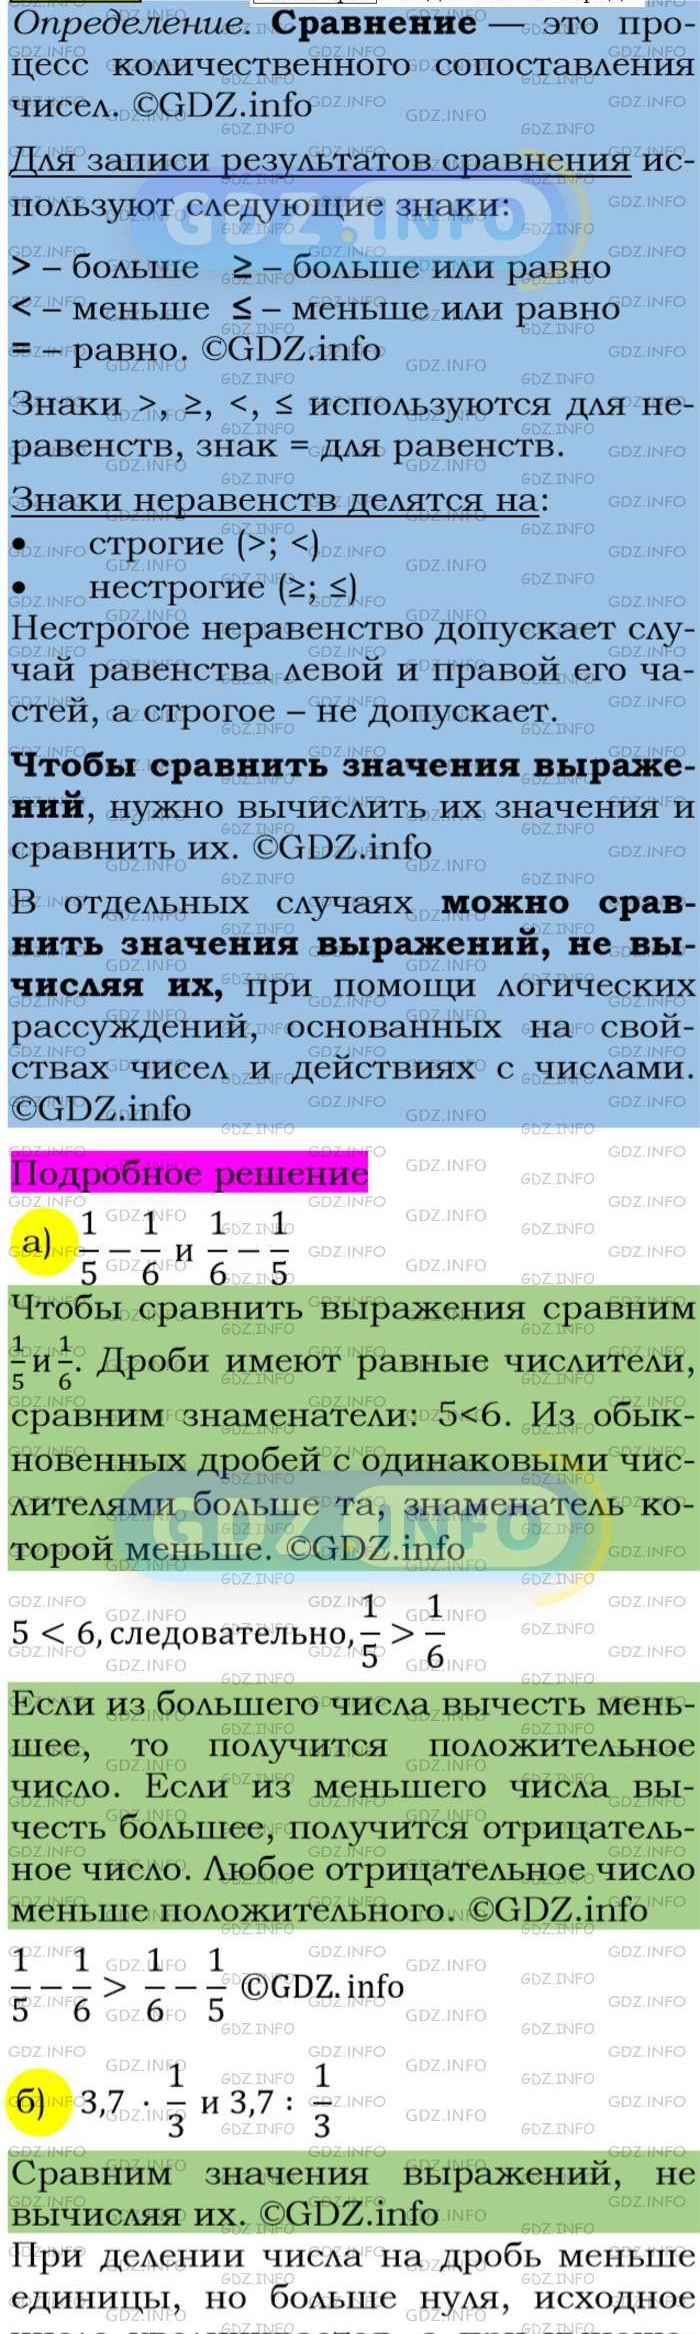 Фото подробного решения: Номер задания №127 из ГДЗ по Алгебре 7 класс: Макарычев Ю.Н.